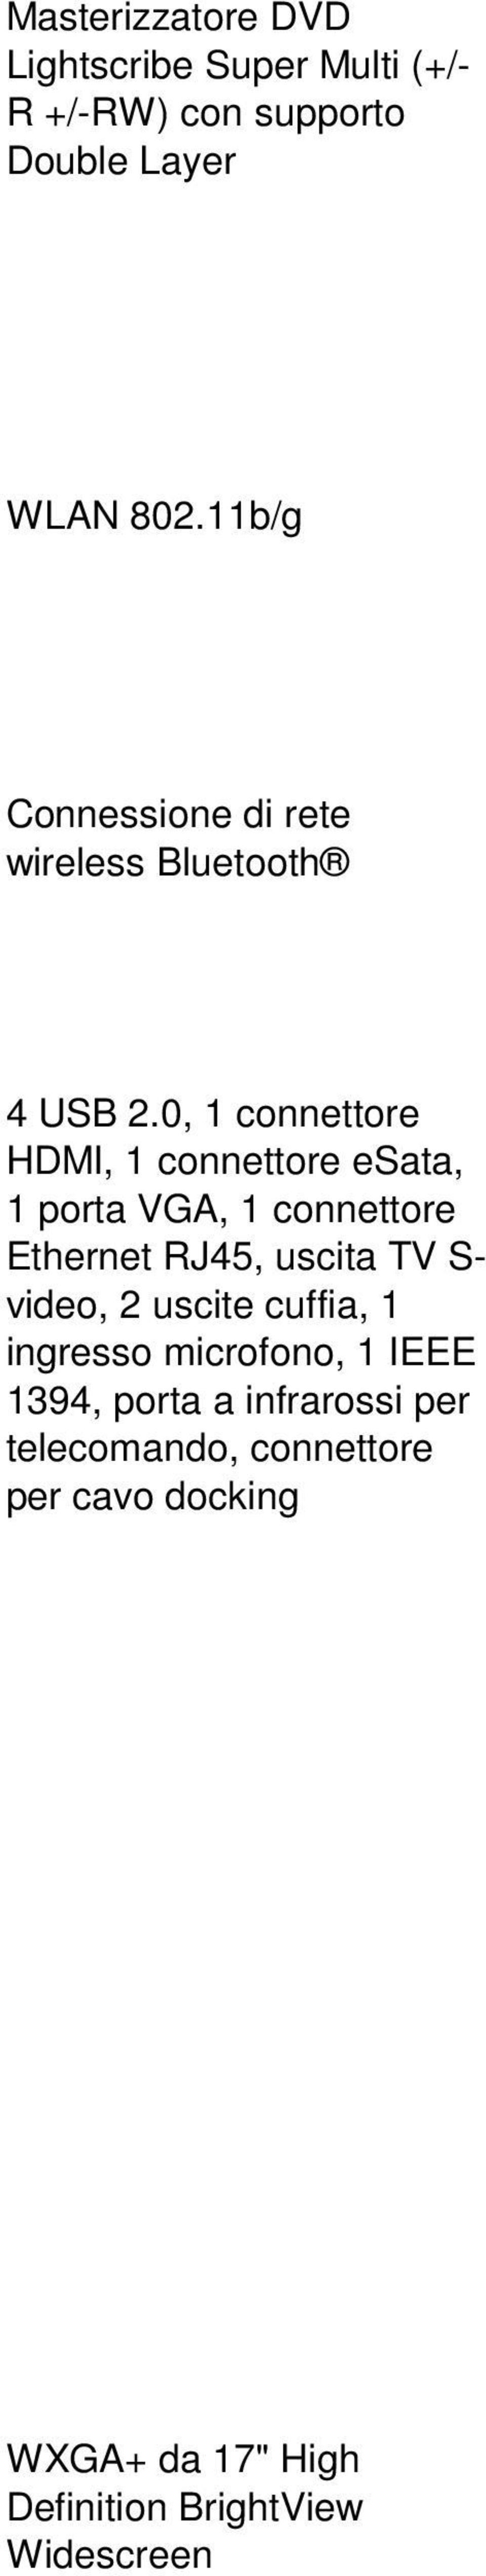 0, 1 connettore HDMI, 1 connettore esata, 1 porta VGA, 1 connettore Ethernet RJ45, uscita TV S- video,